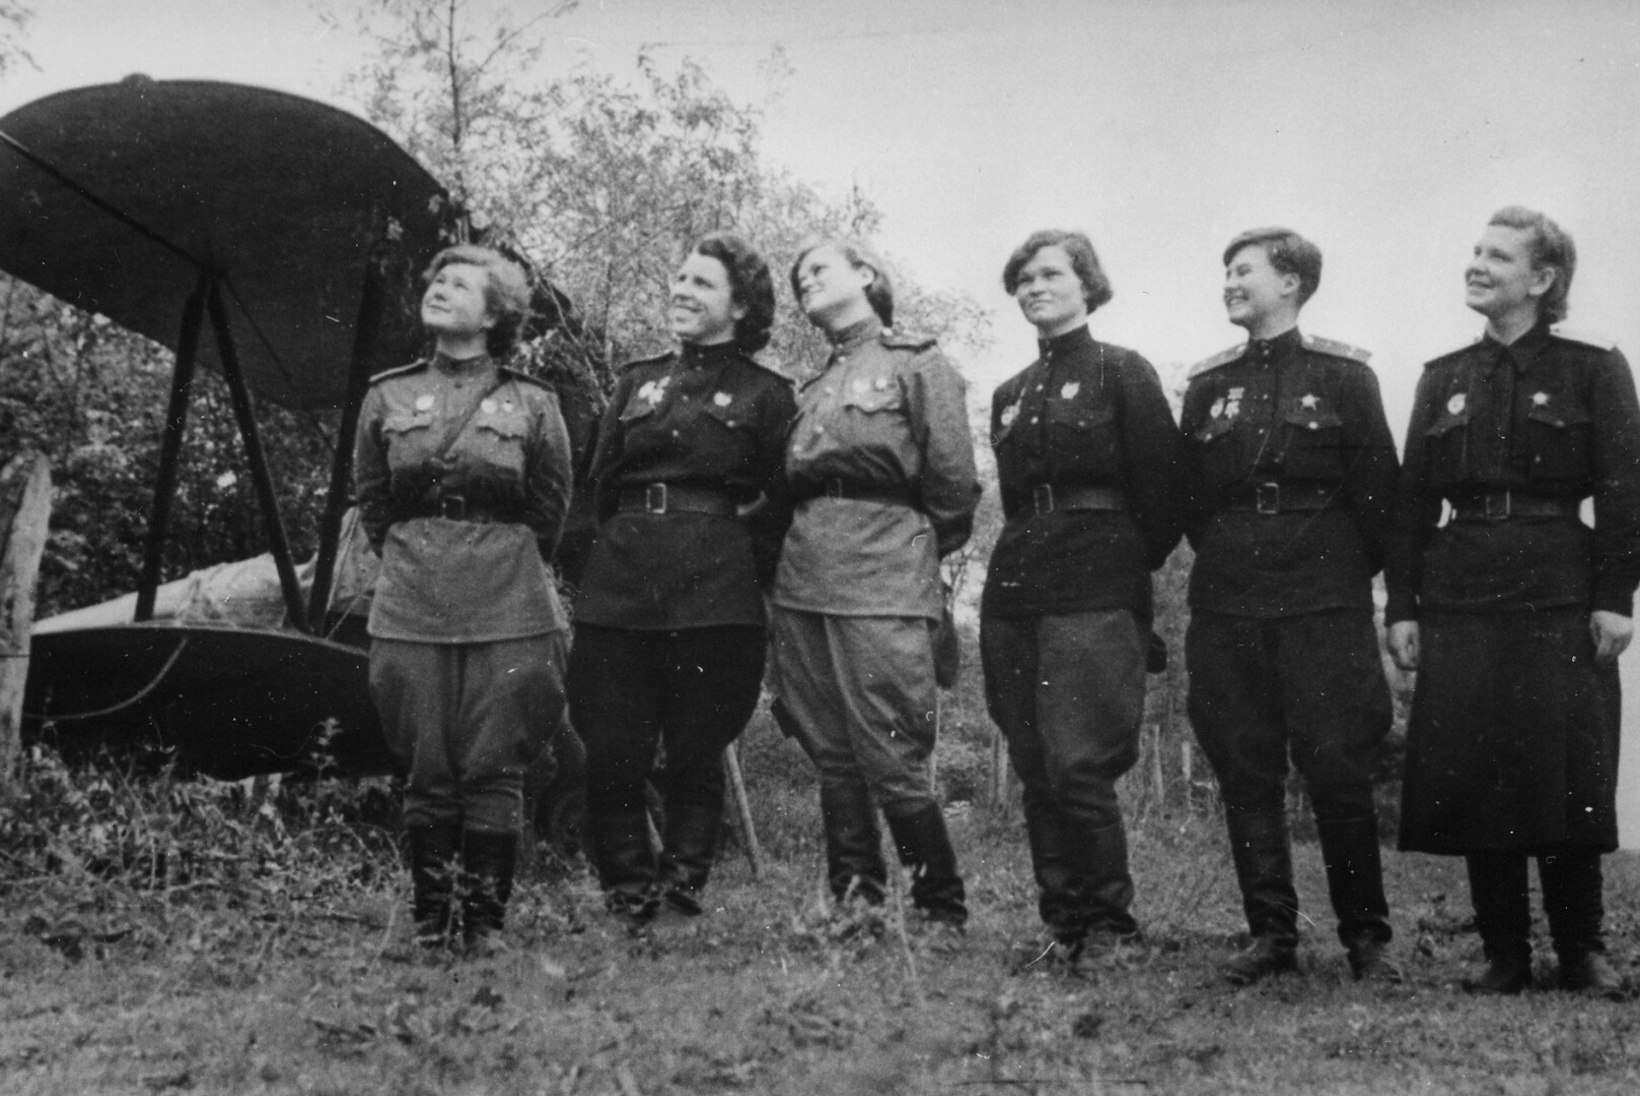 KARTMATUD ÖÖNÕIAD: Nõukogude Liidu naislendurid tekitasid sakslastele vineerist lennukitega ohtralt probleeme